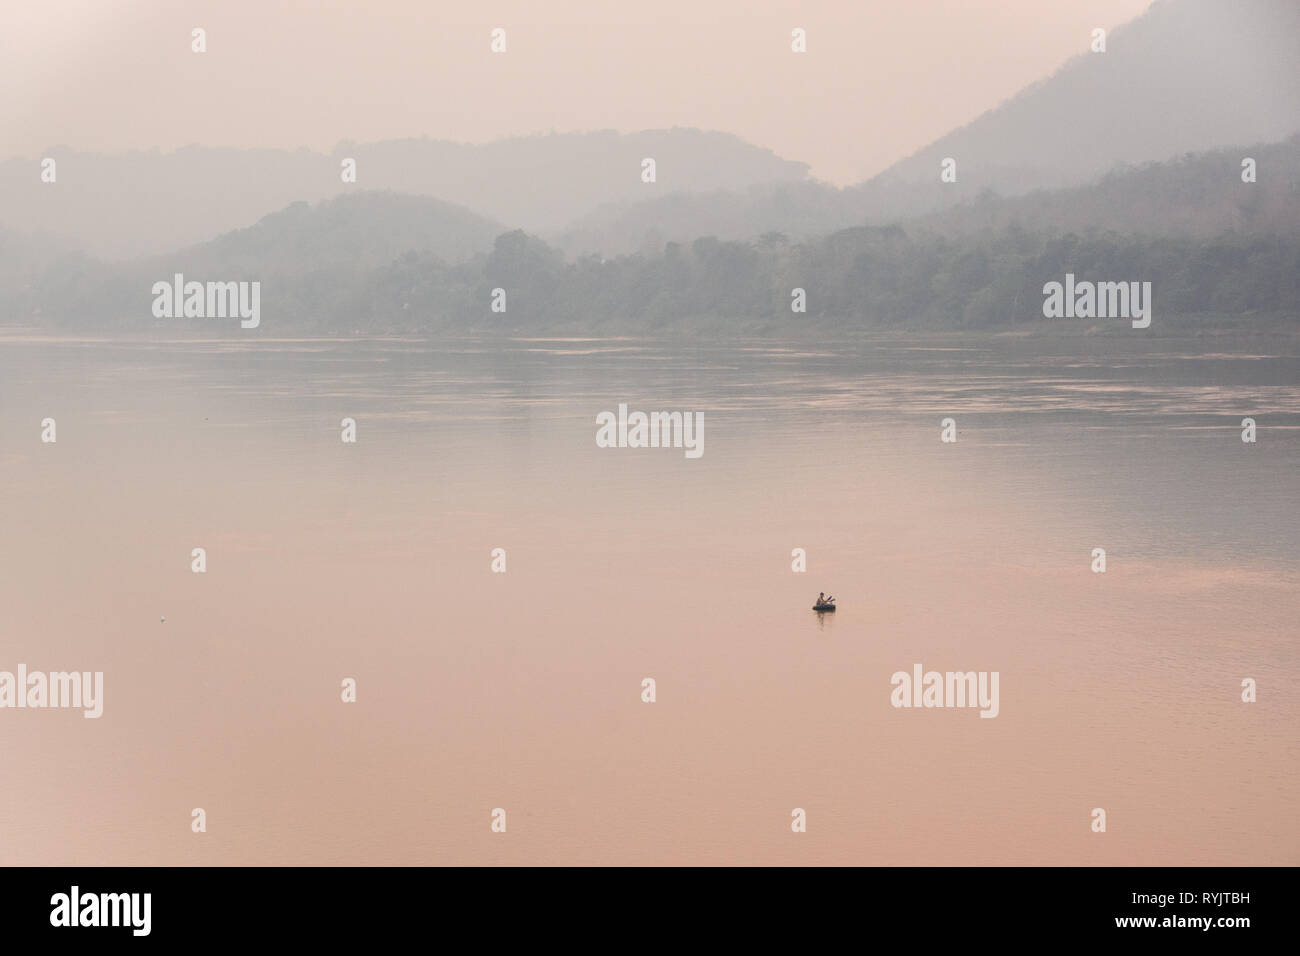 Perdu dans la brume sèche - Pêcheur sur un petit radeau sur la rivière du Mékong pendant la saison de gravure au Laos Banque D'Images